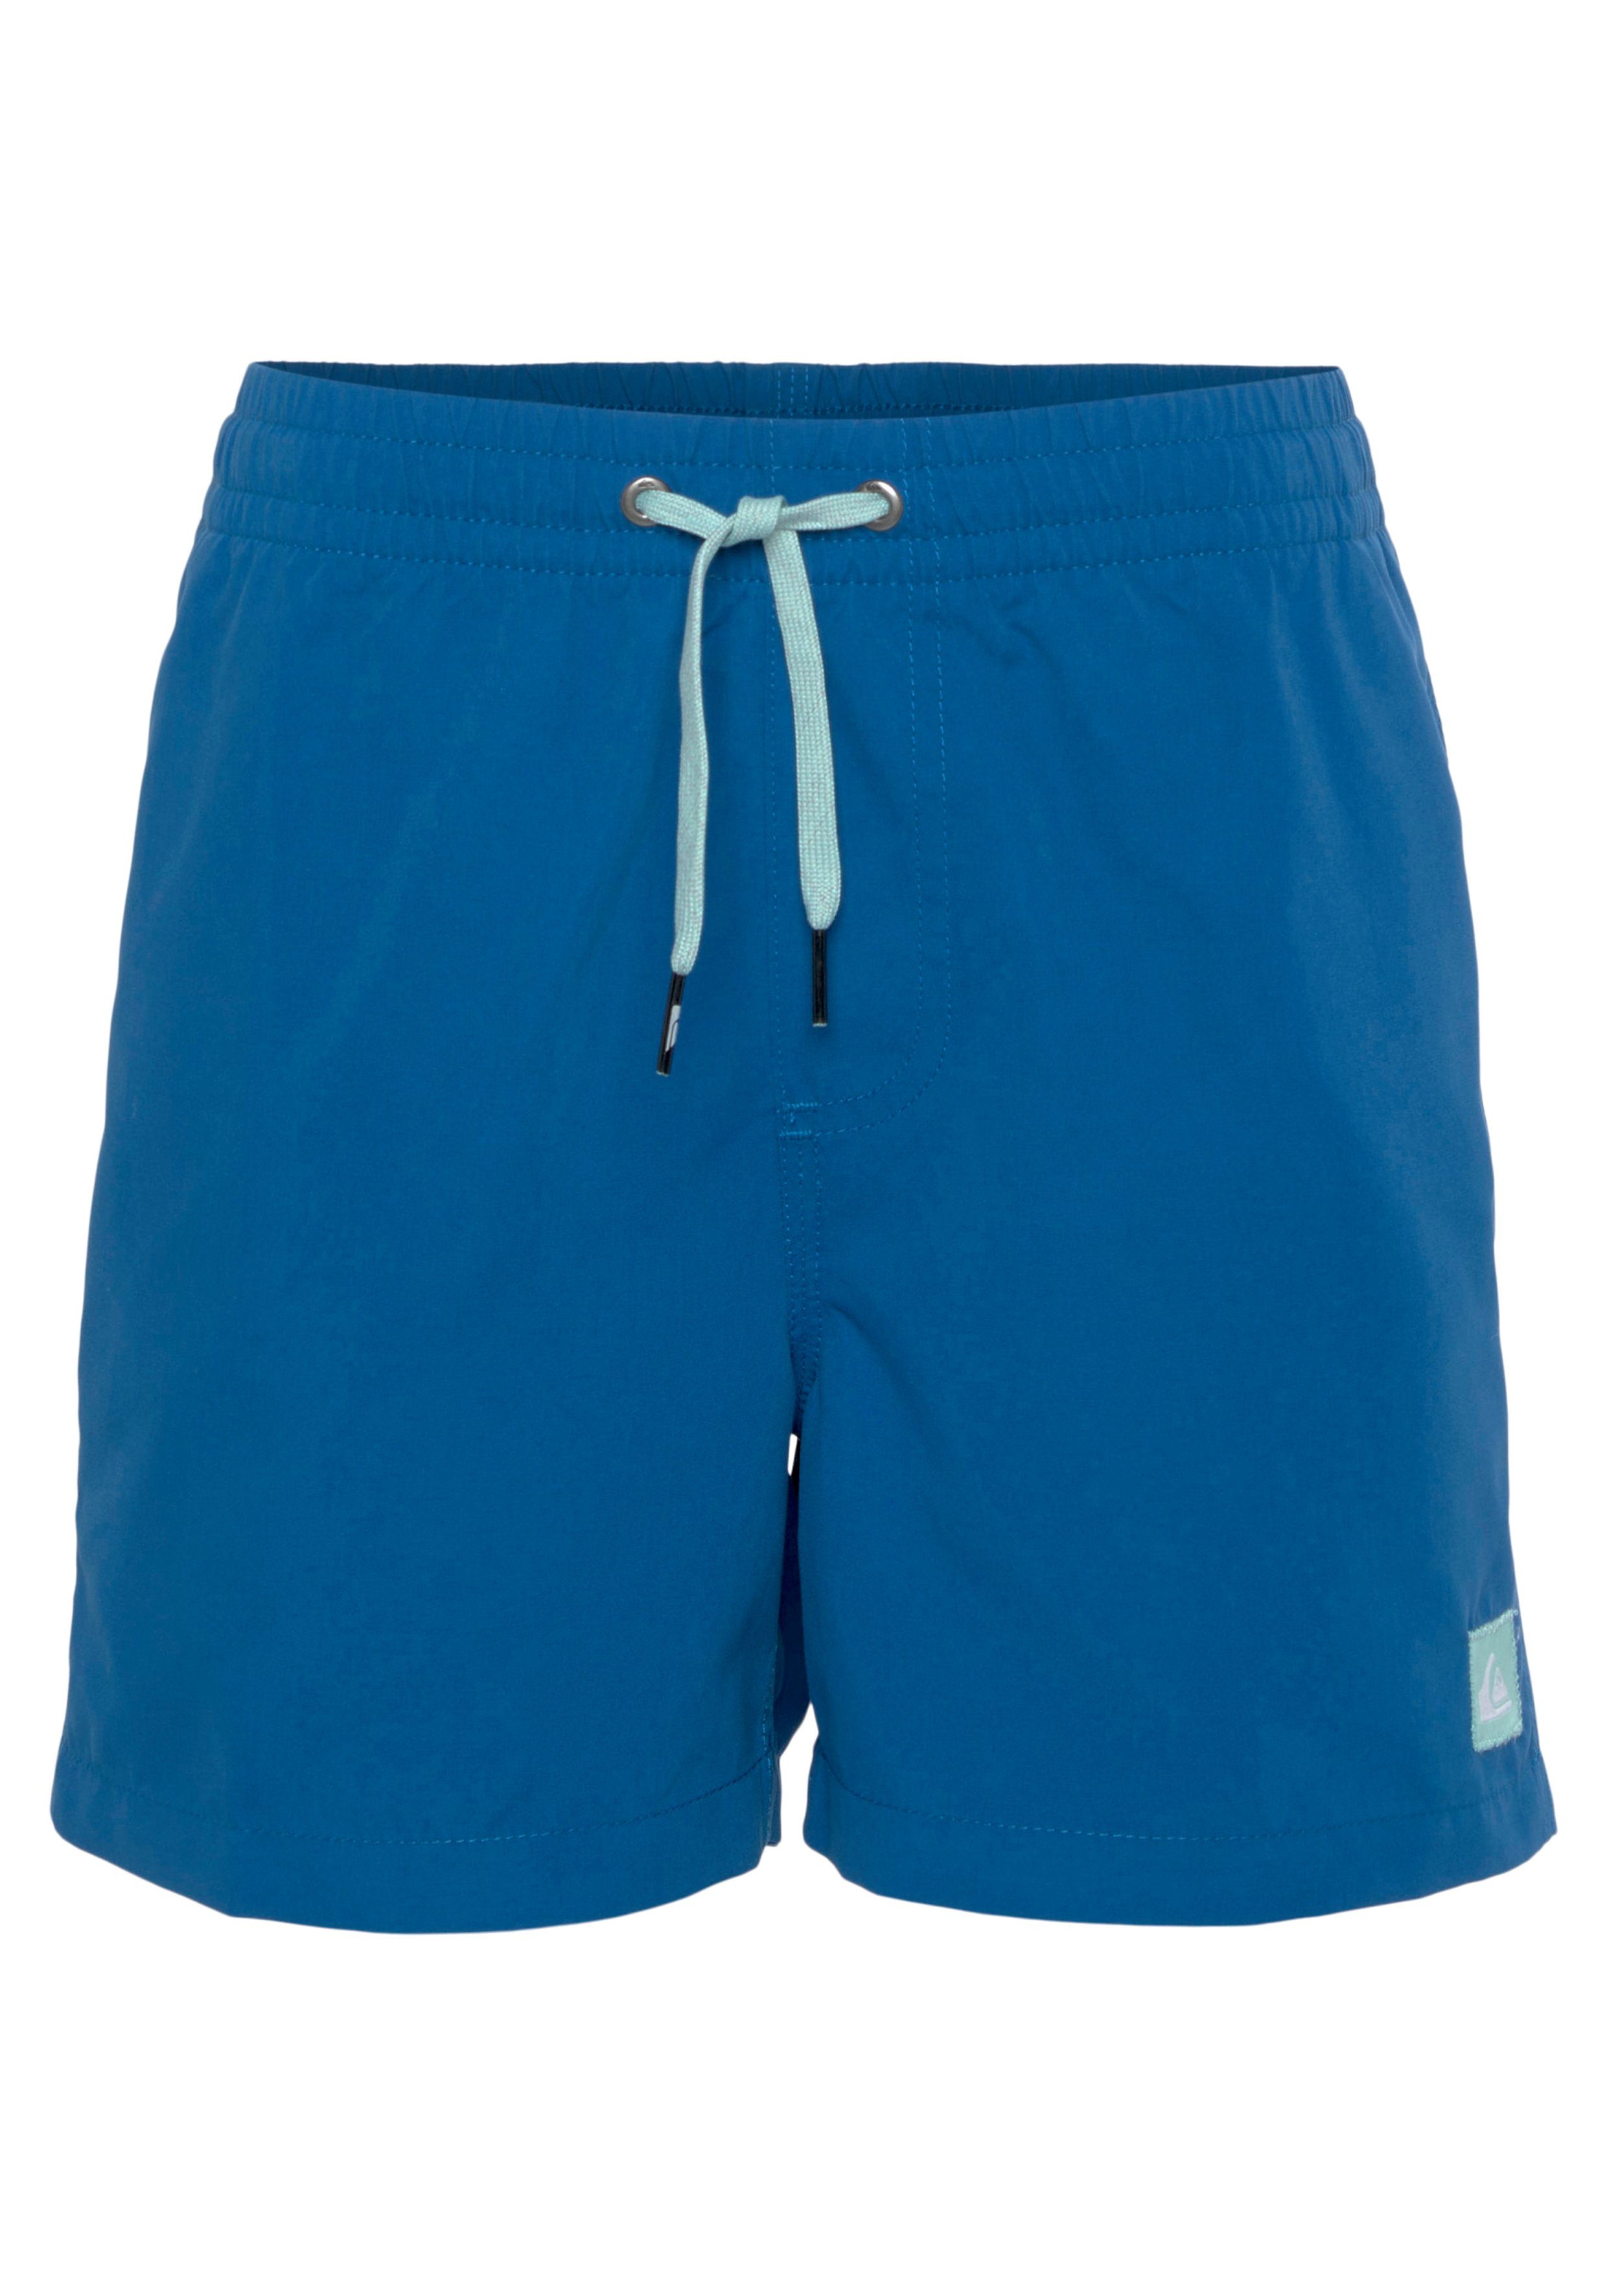 Quiksilver Badeshorts Beach Swim Shorts brt0-snorkel und Jungen blue